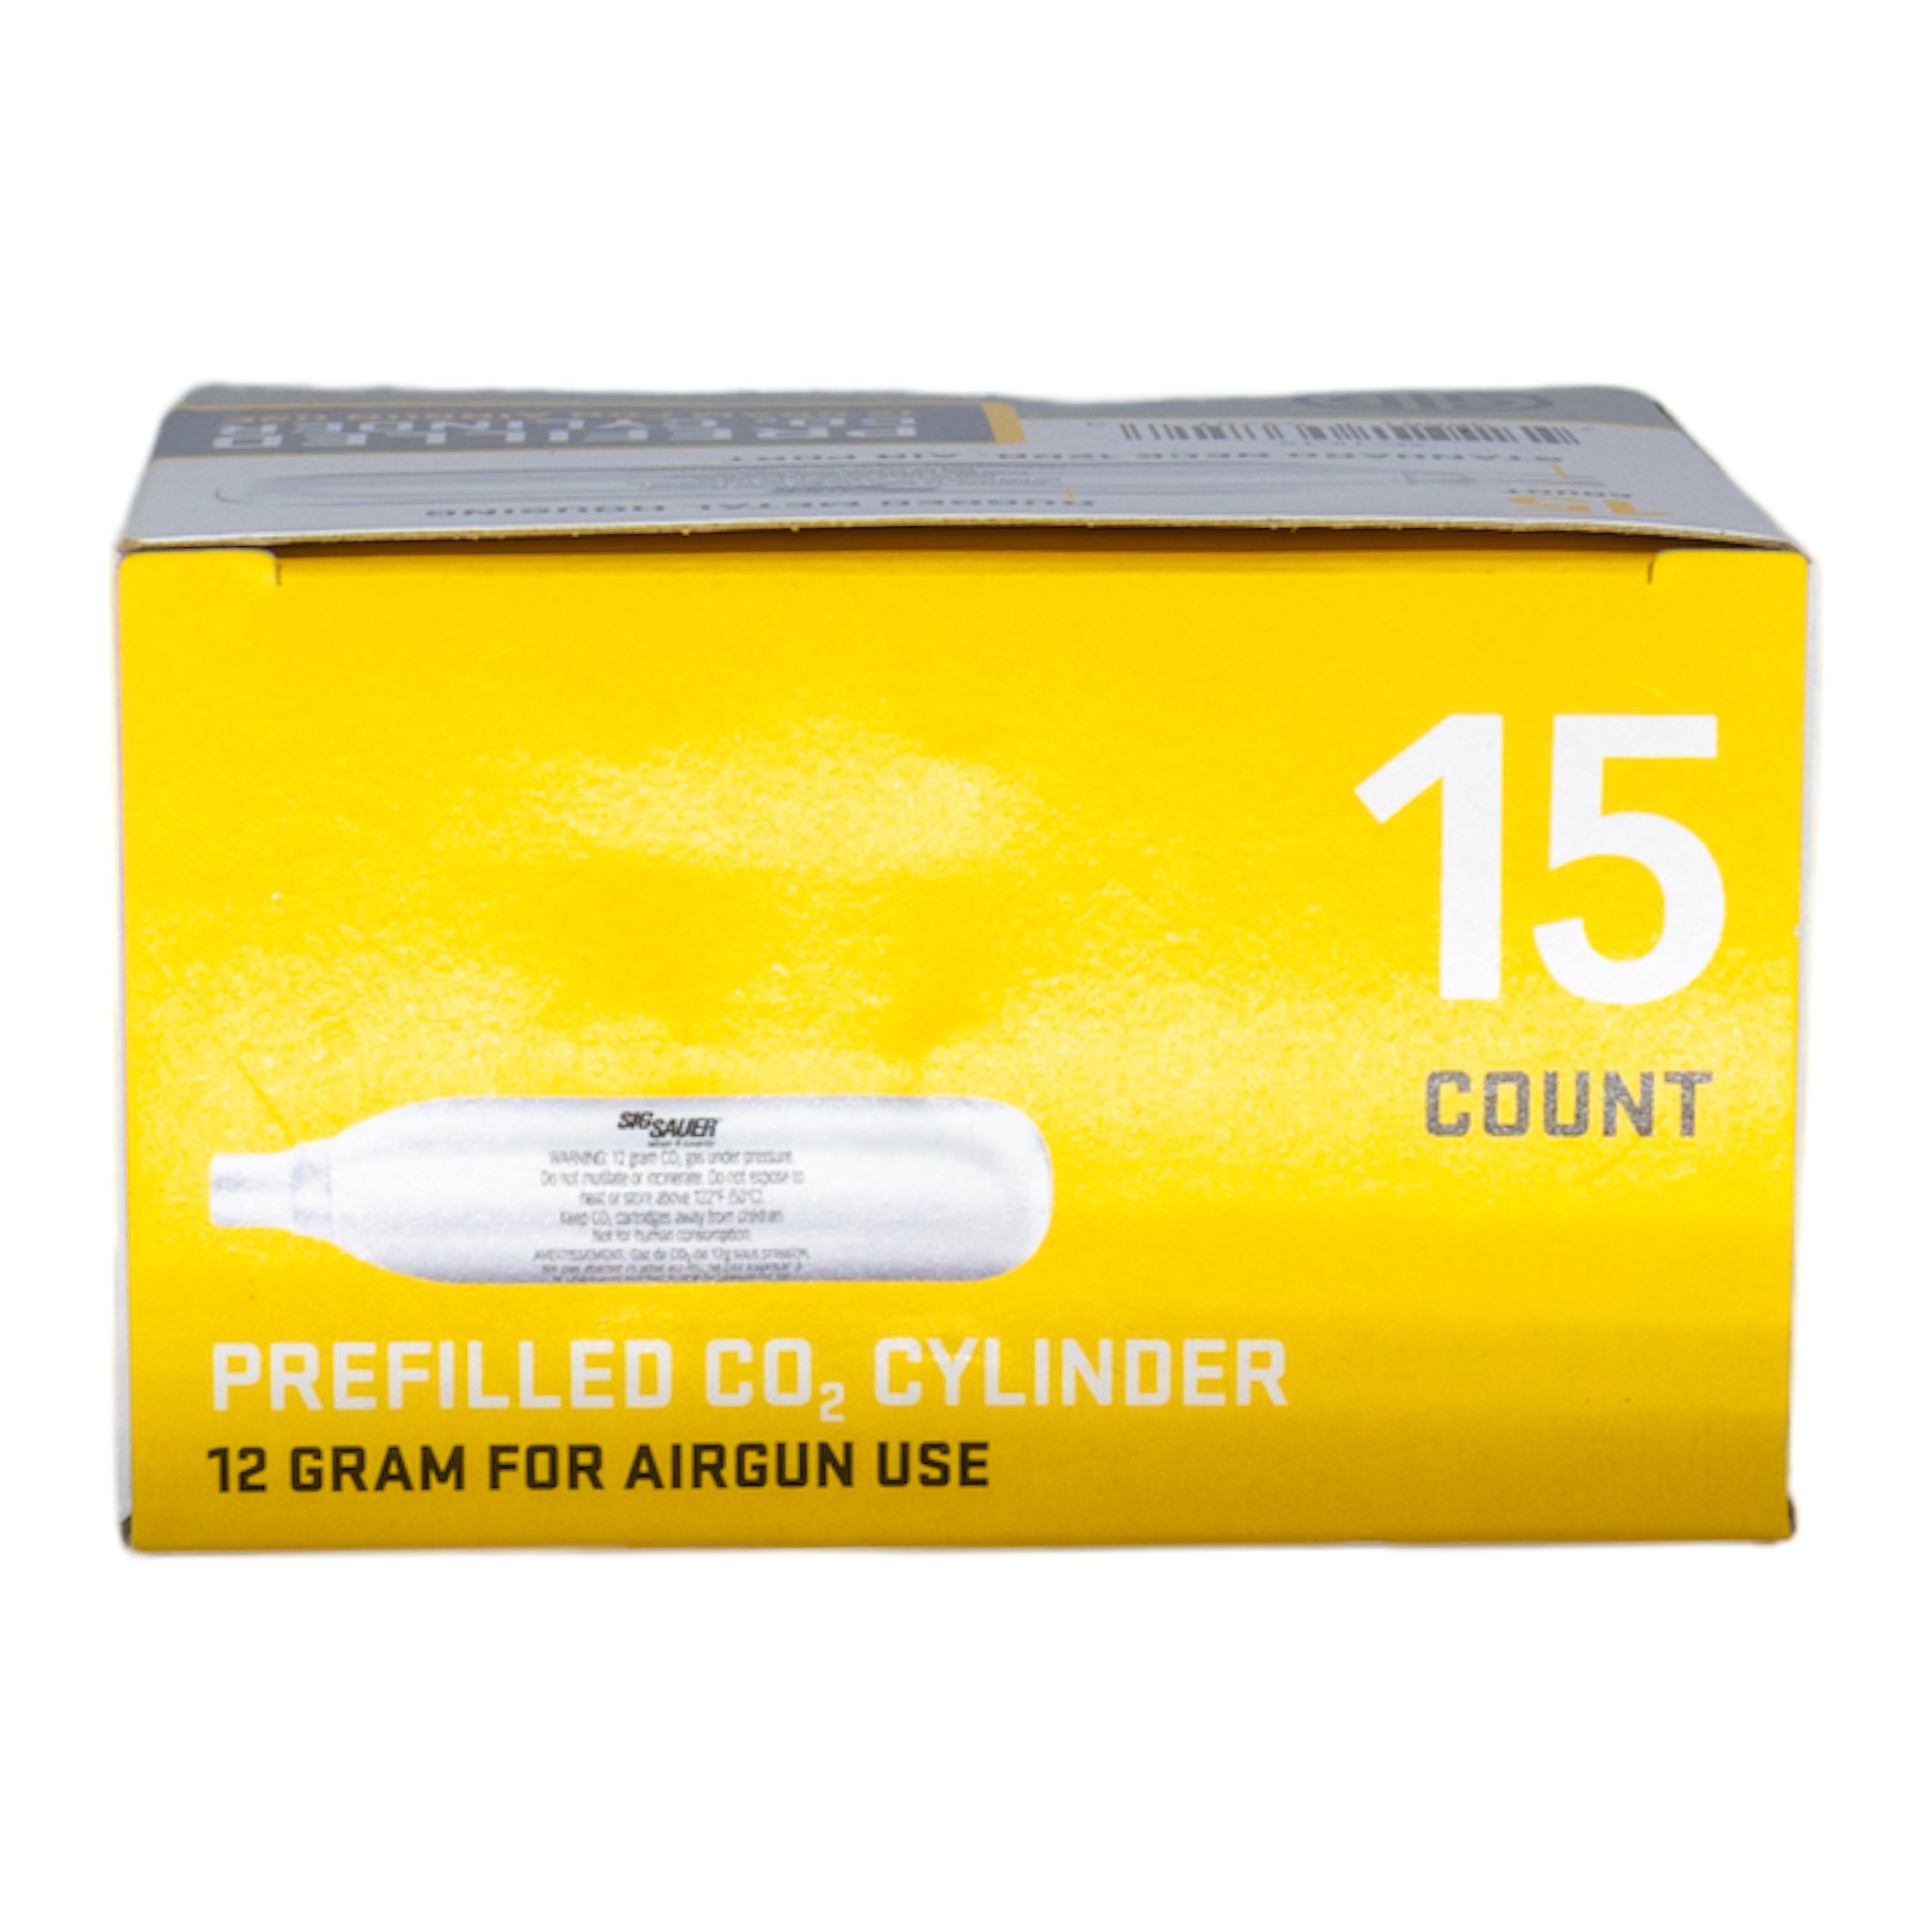 SIG Sauer 12g CO2 Cartridges (15-Pack) - ssairsoft.com